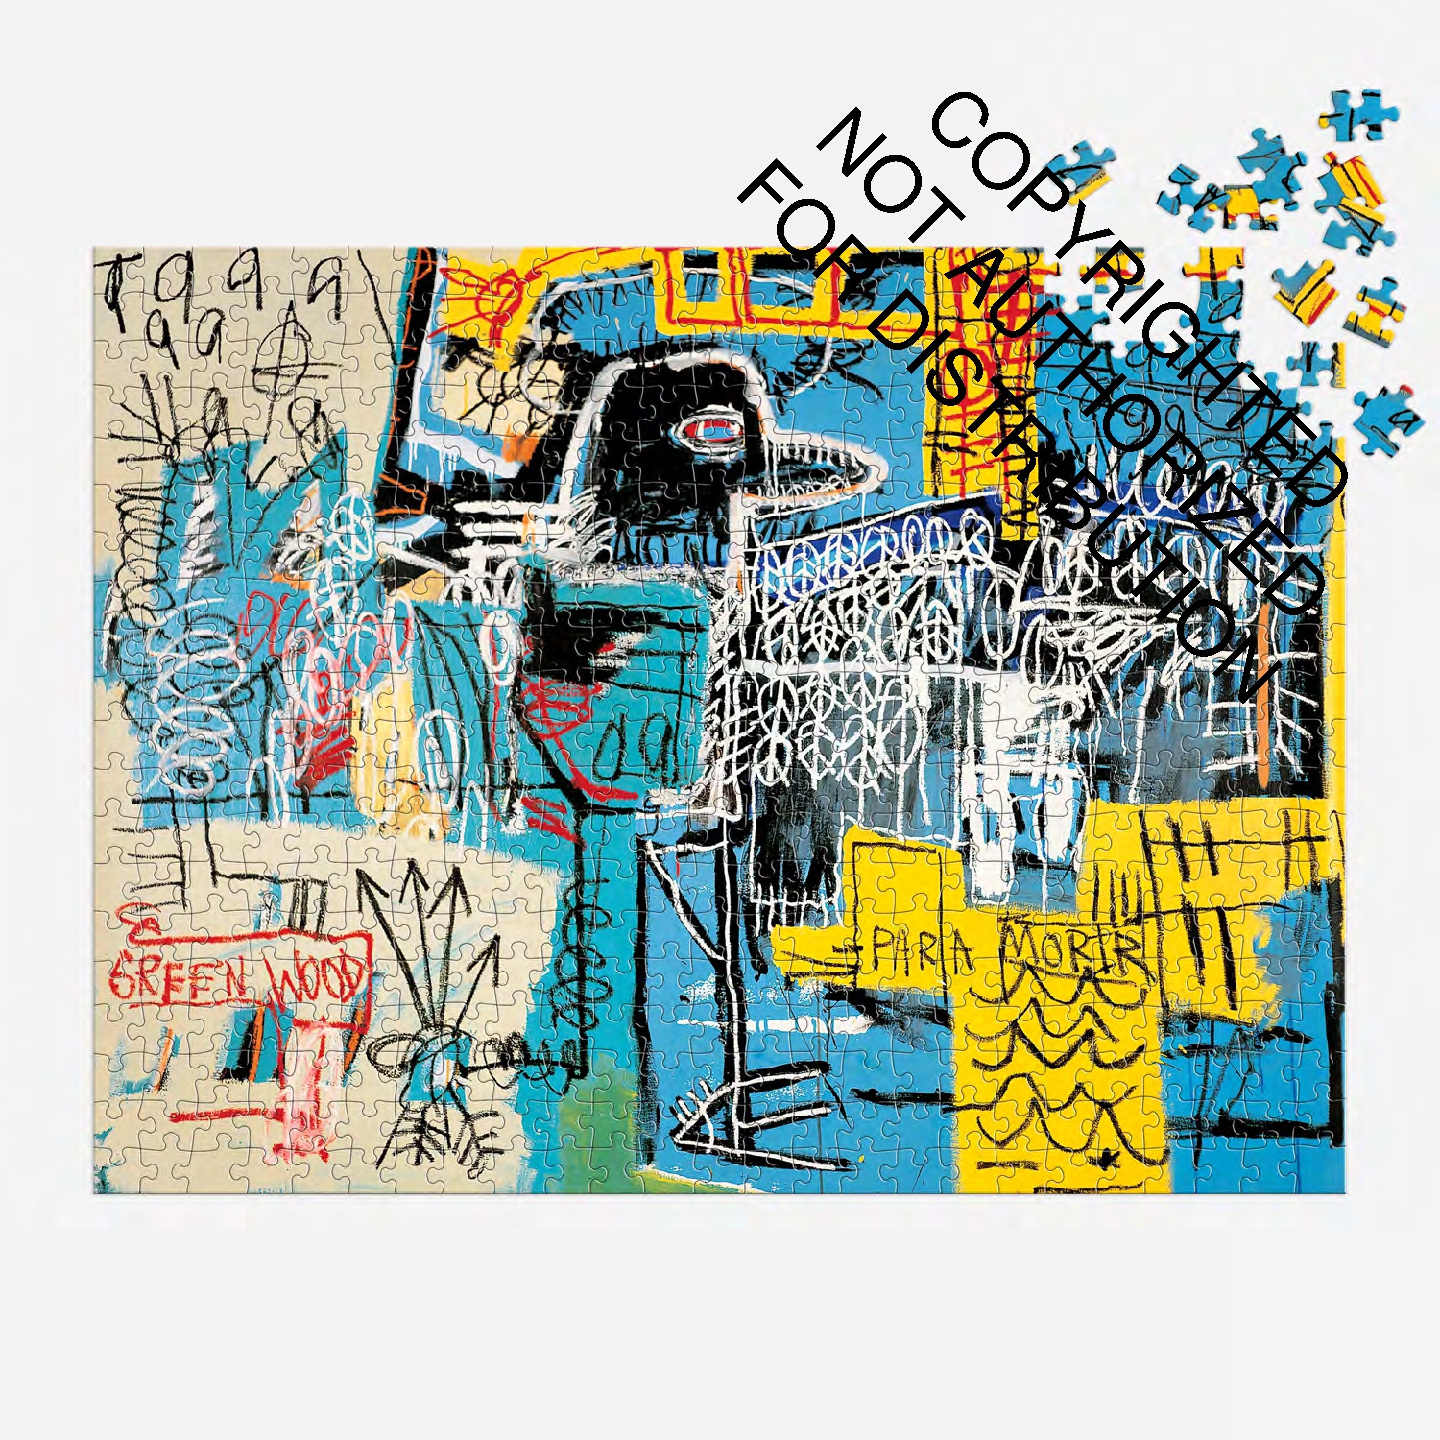 Basquiat Bird on Money 500 Piece Book Puzzle